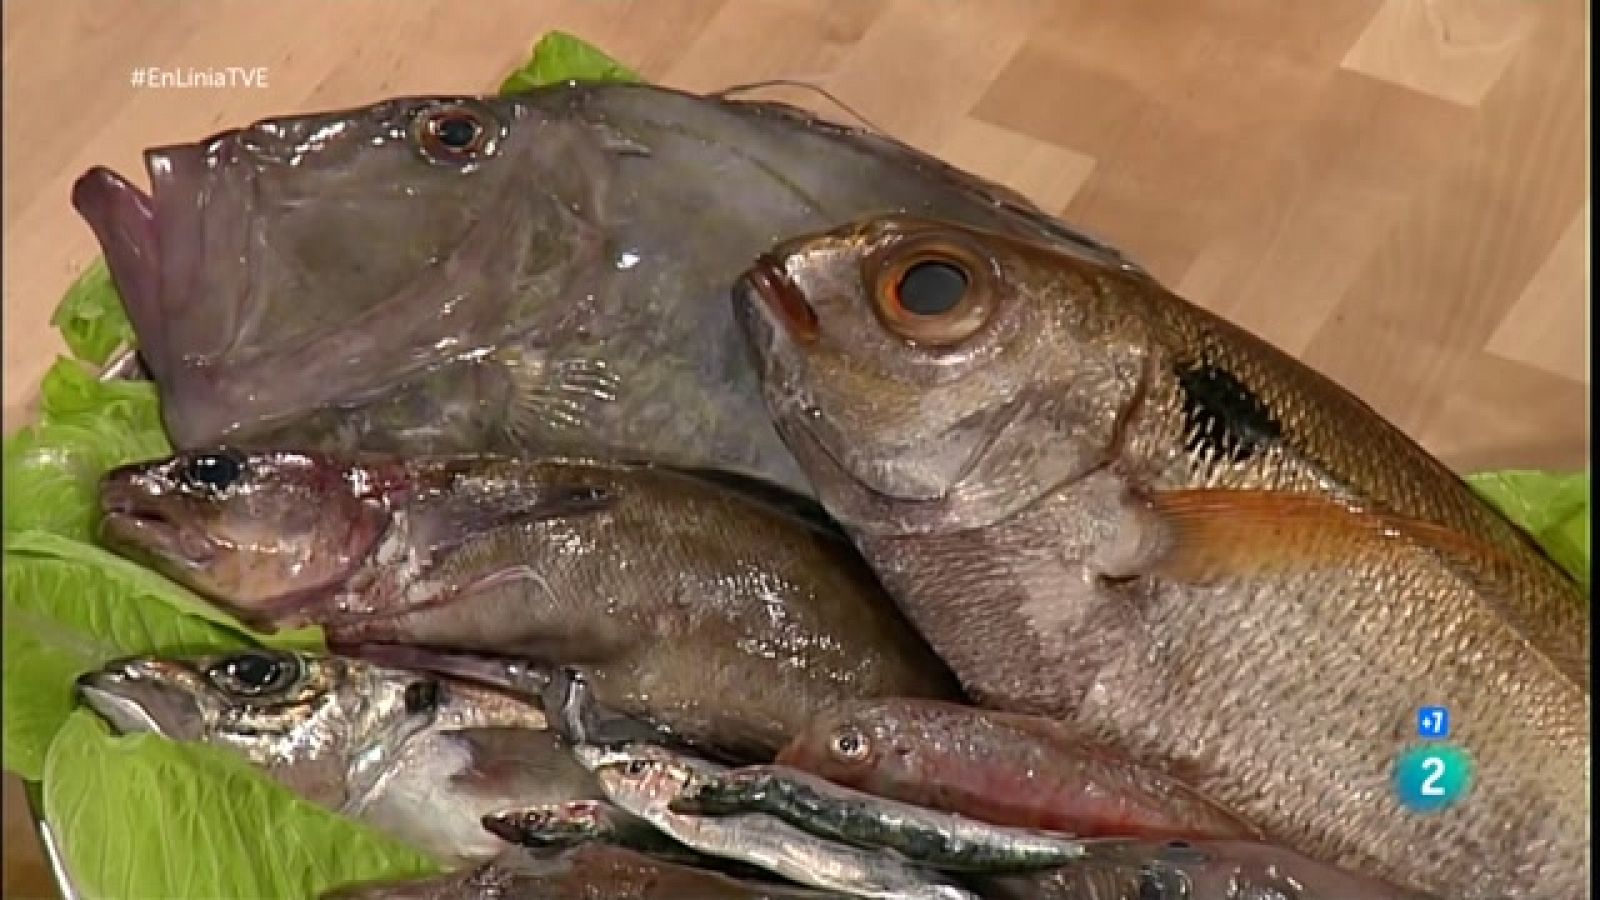 Sabem cuinar bé el peix? | En Línia - RTVE Catalunya